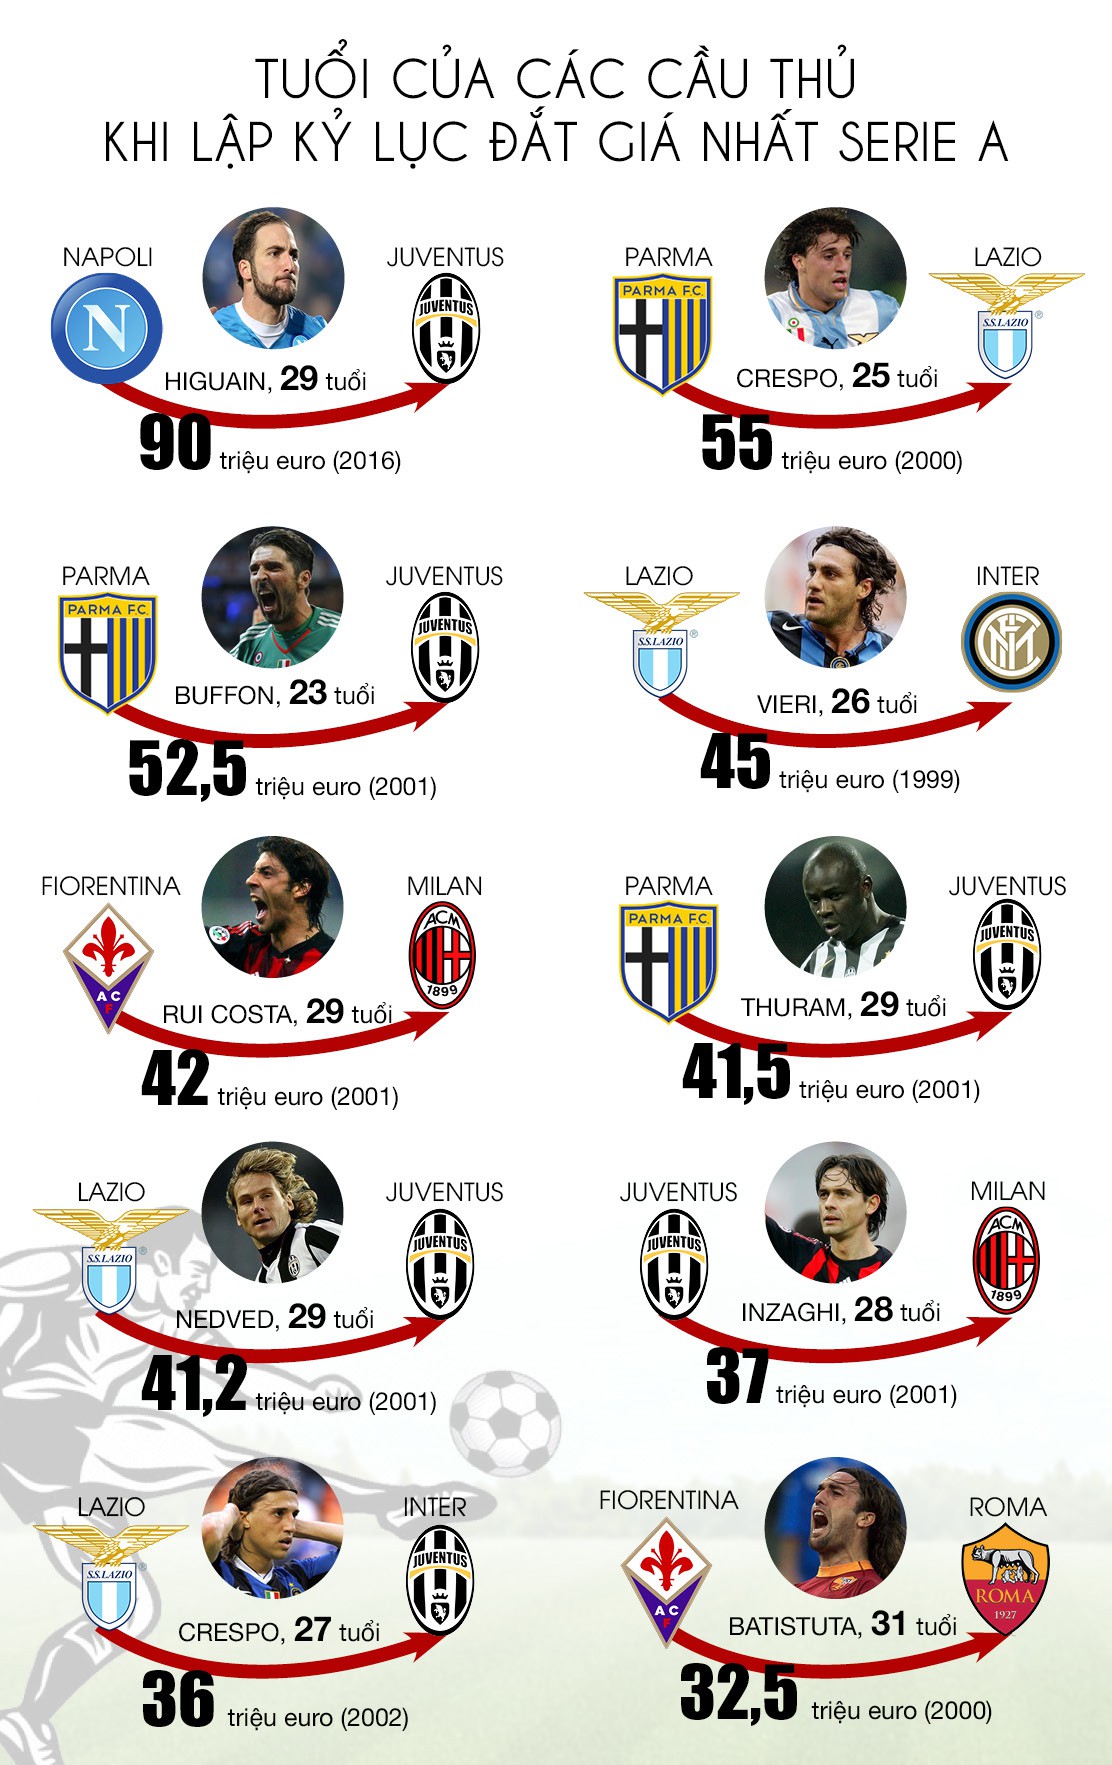 Tuổi của các cầu thủ lập kỷ lục đắt giá nhất Serie A